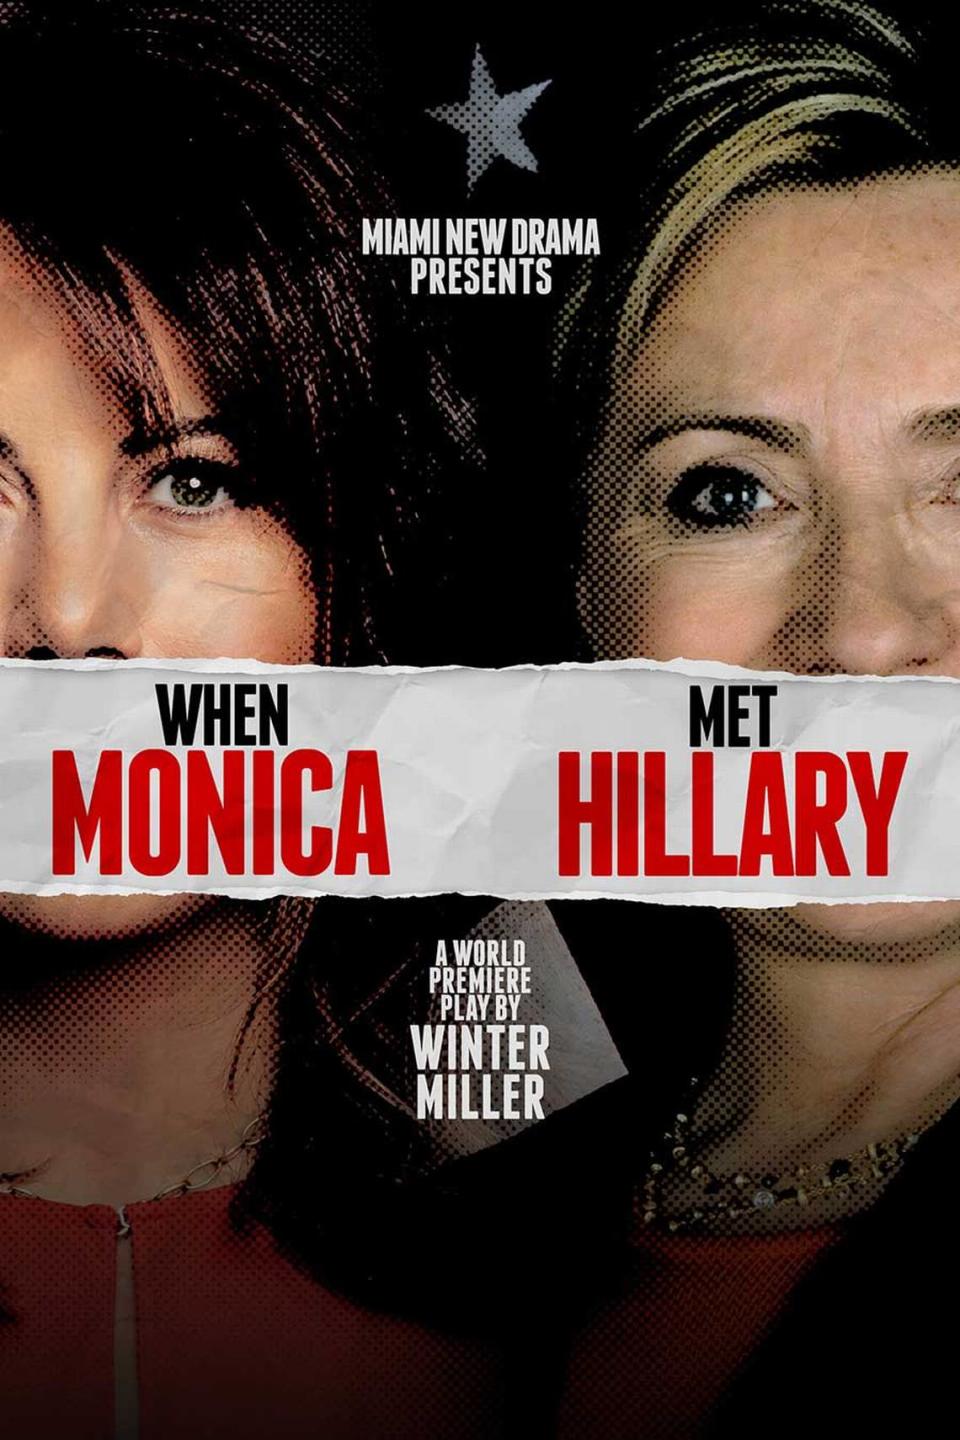 Miami New Drama presenta el estreno mundial de “When Monica Met Hillary” en el Colony Theater.